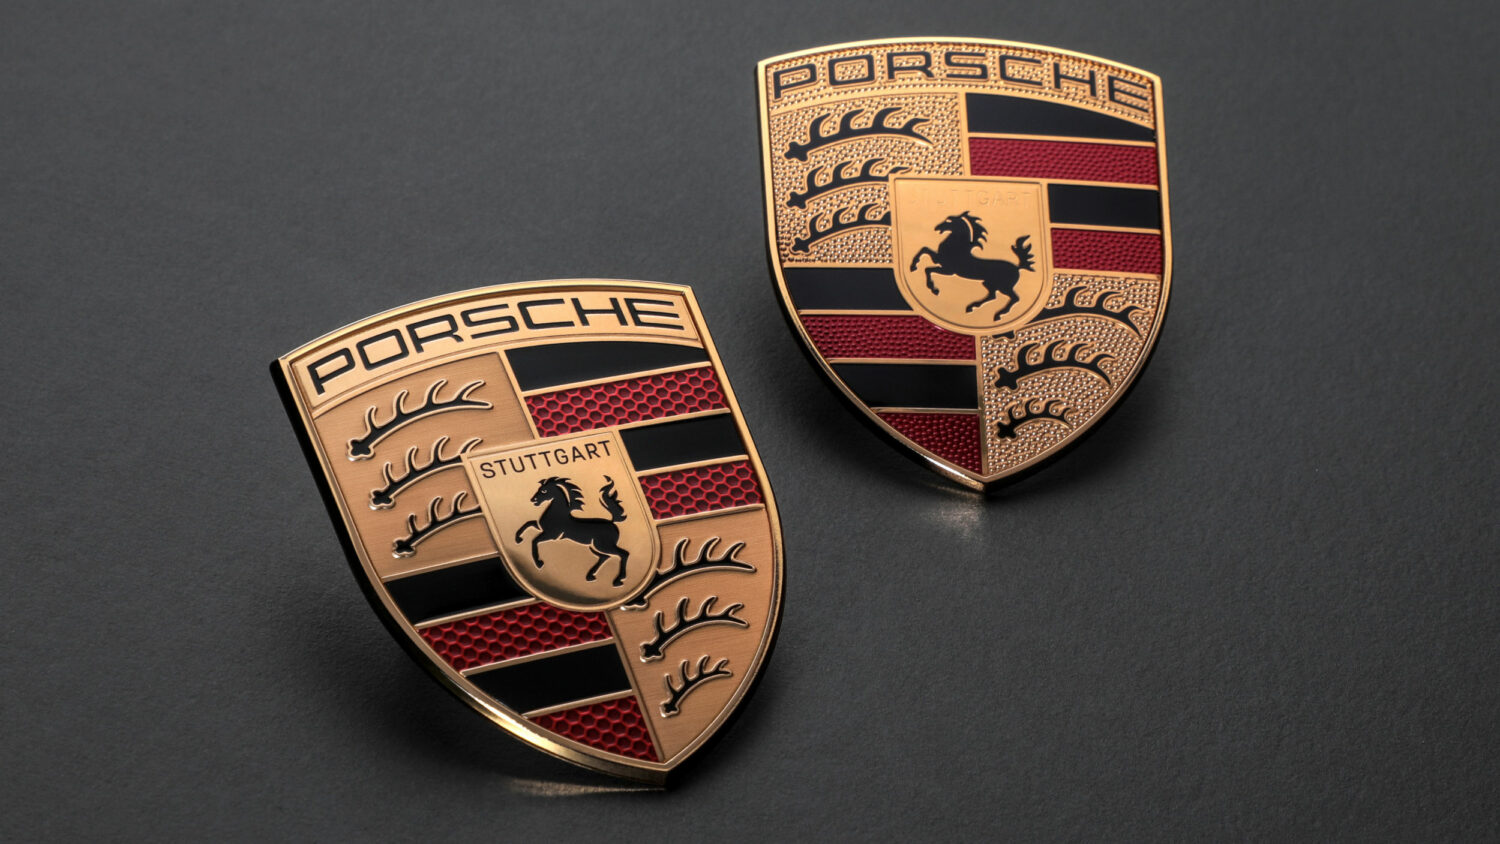 Porsche Markenlogo – vorher (rechts) und nachher (links), Quelle: Porsche AG